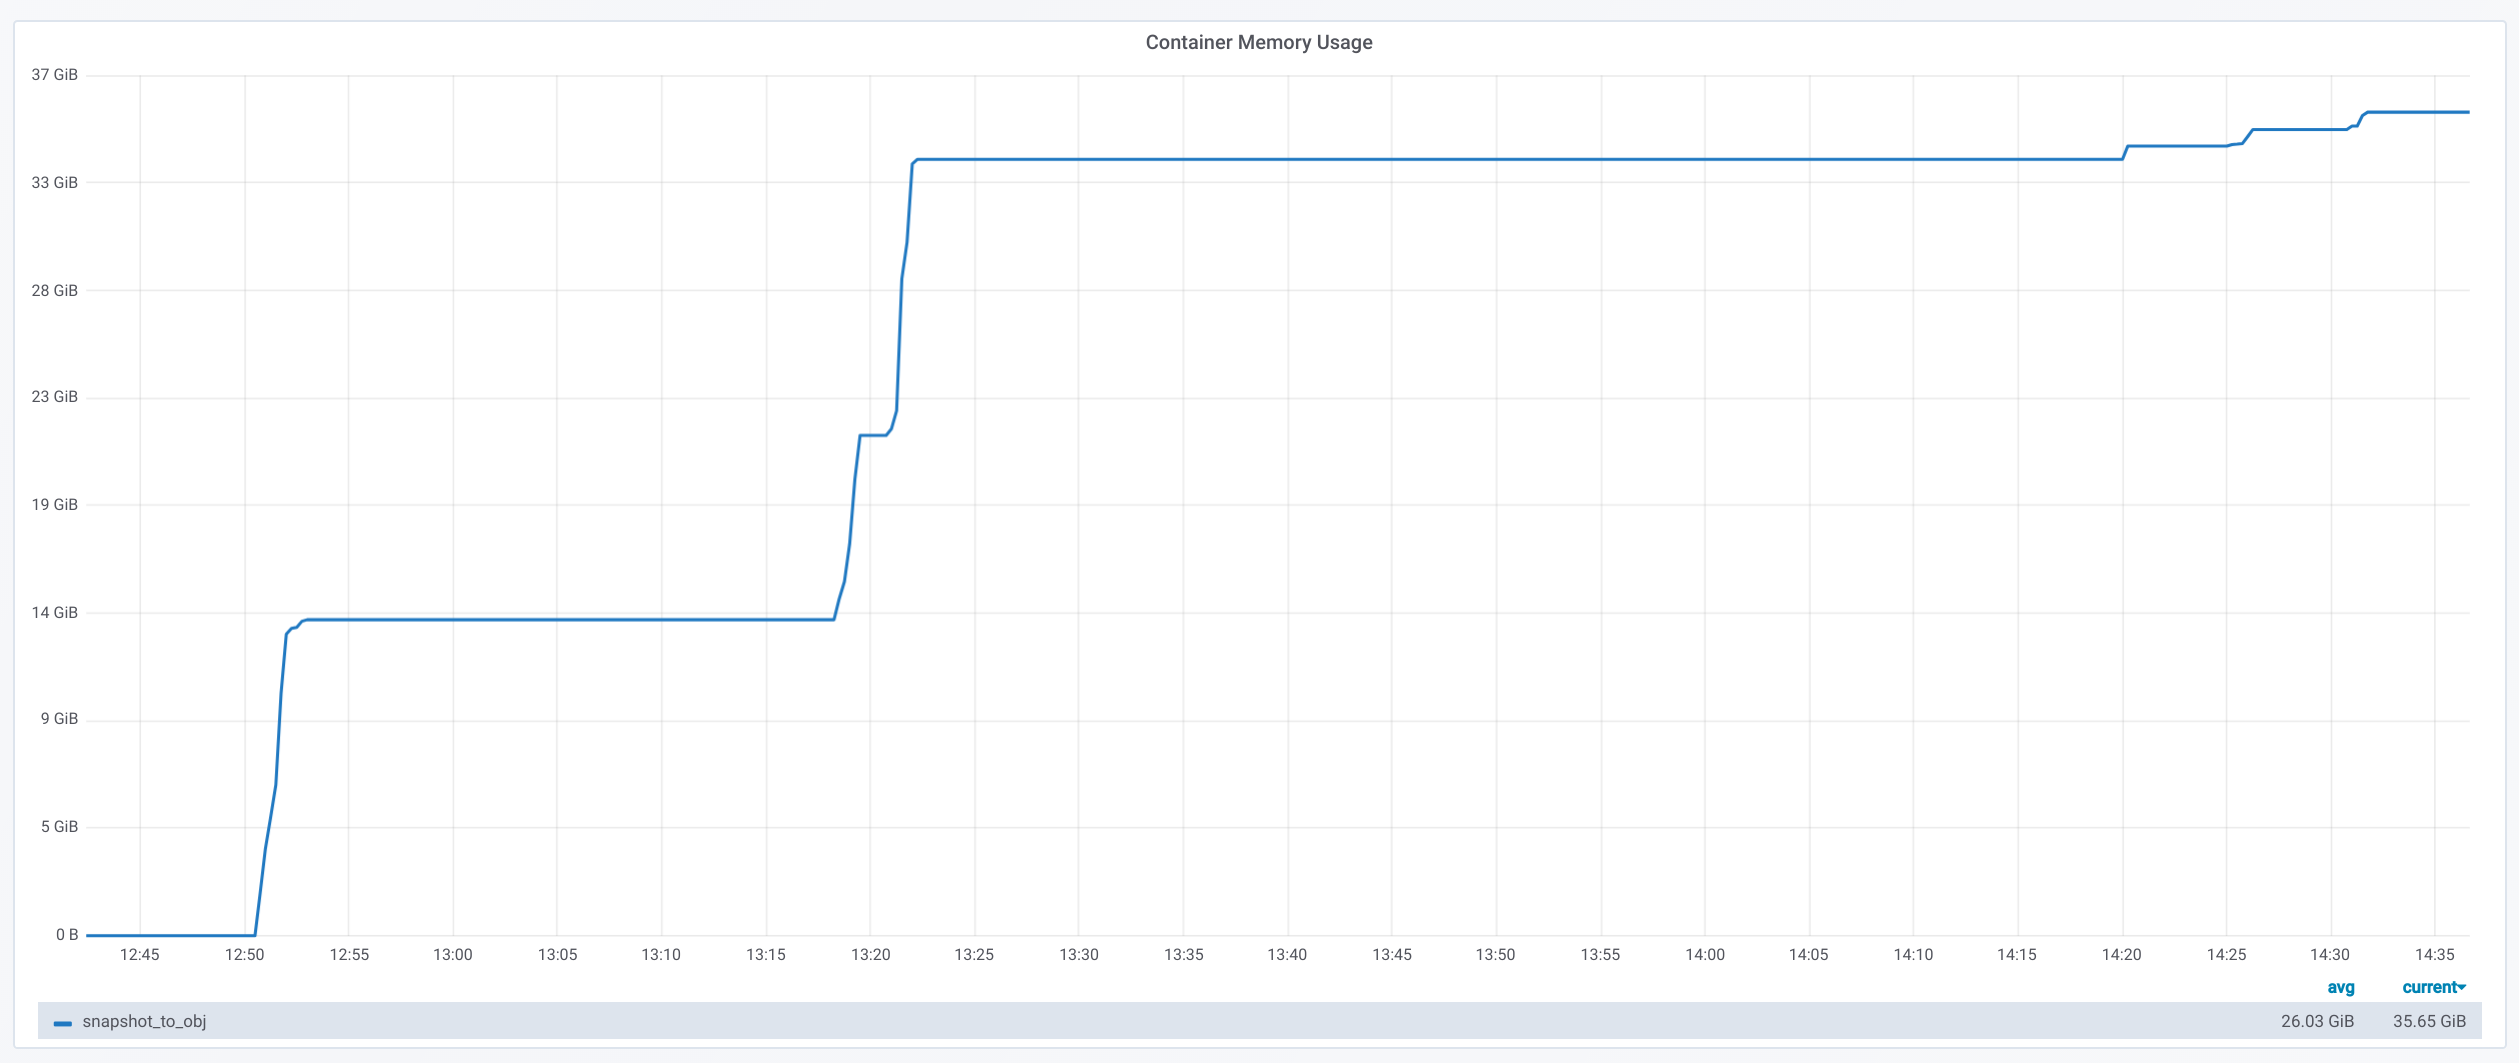 Docker monitoring memory usage (snapshot_to_obj)